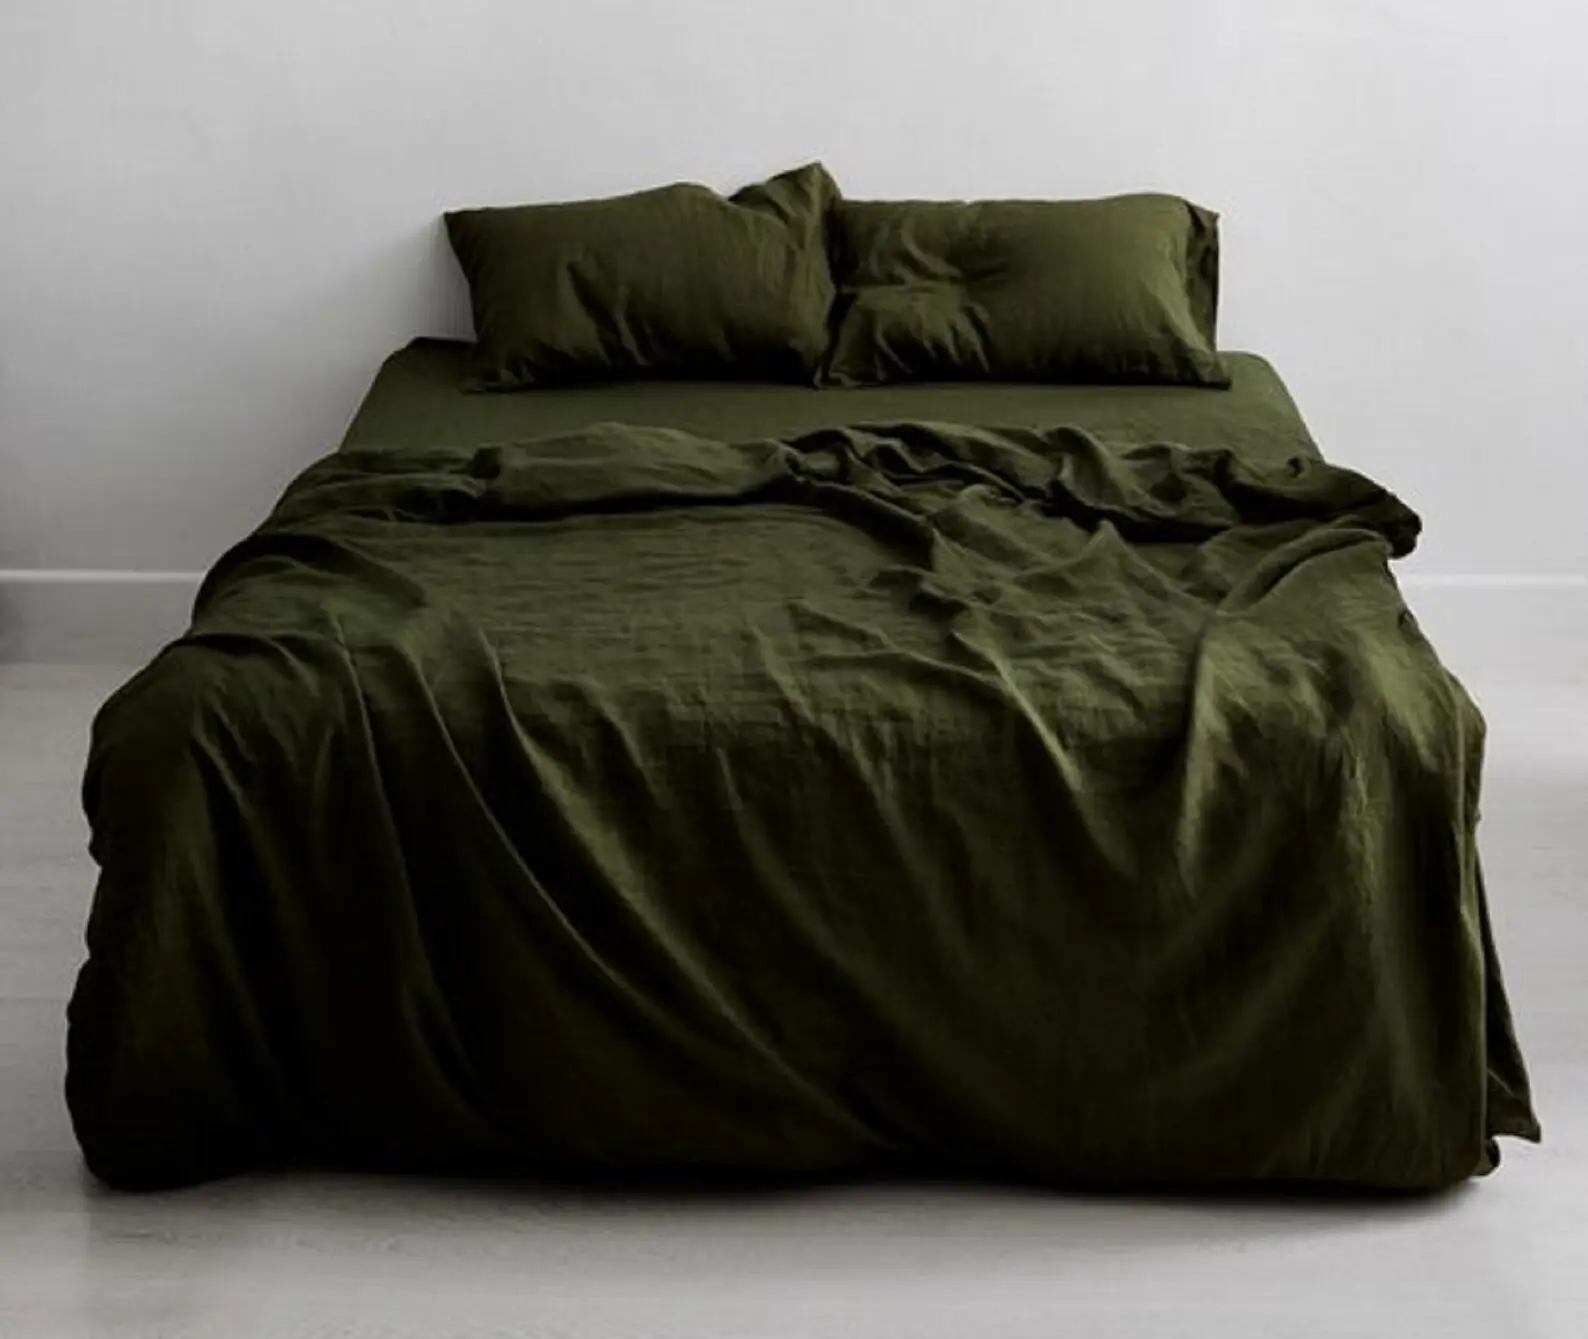 Plain Olive Green Flat Sheet Pure Cotton Bedsheet Set Natural Hand Dyed Bedding Set Handmade Bohemian Sheet Bed Runner